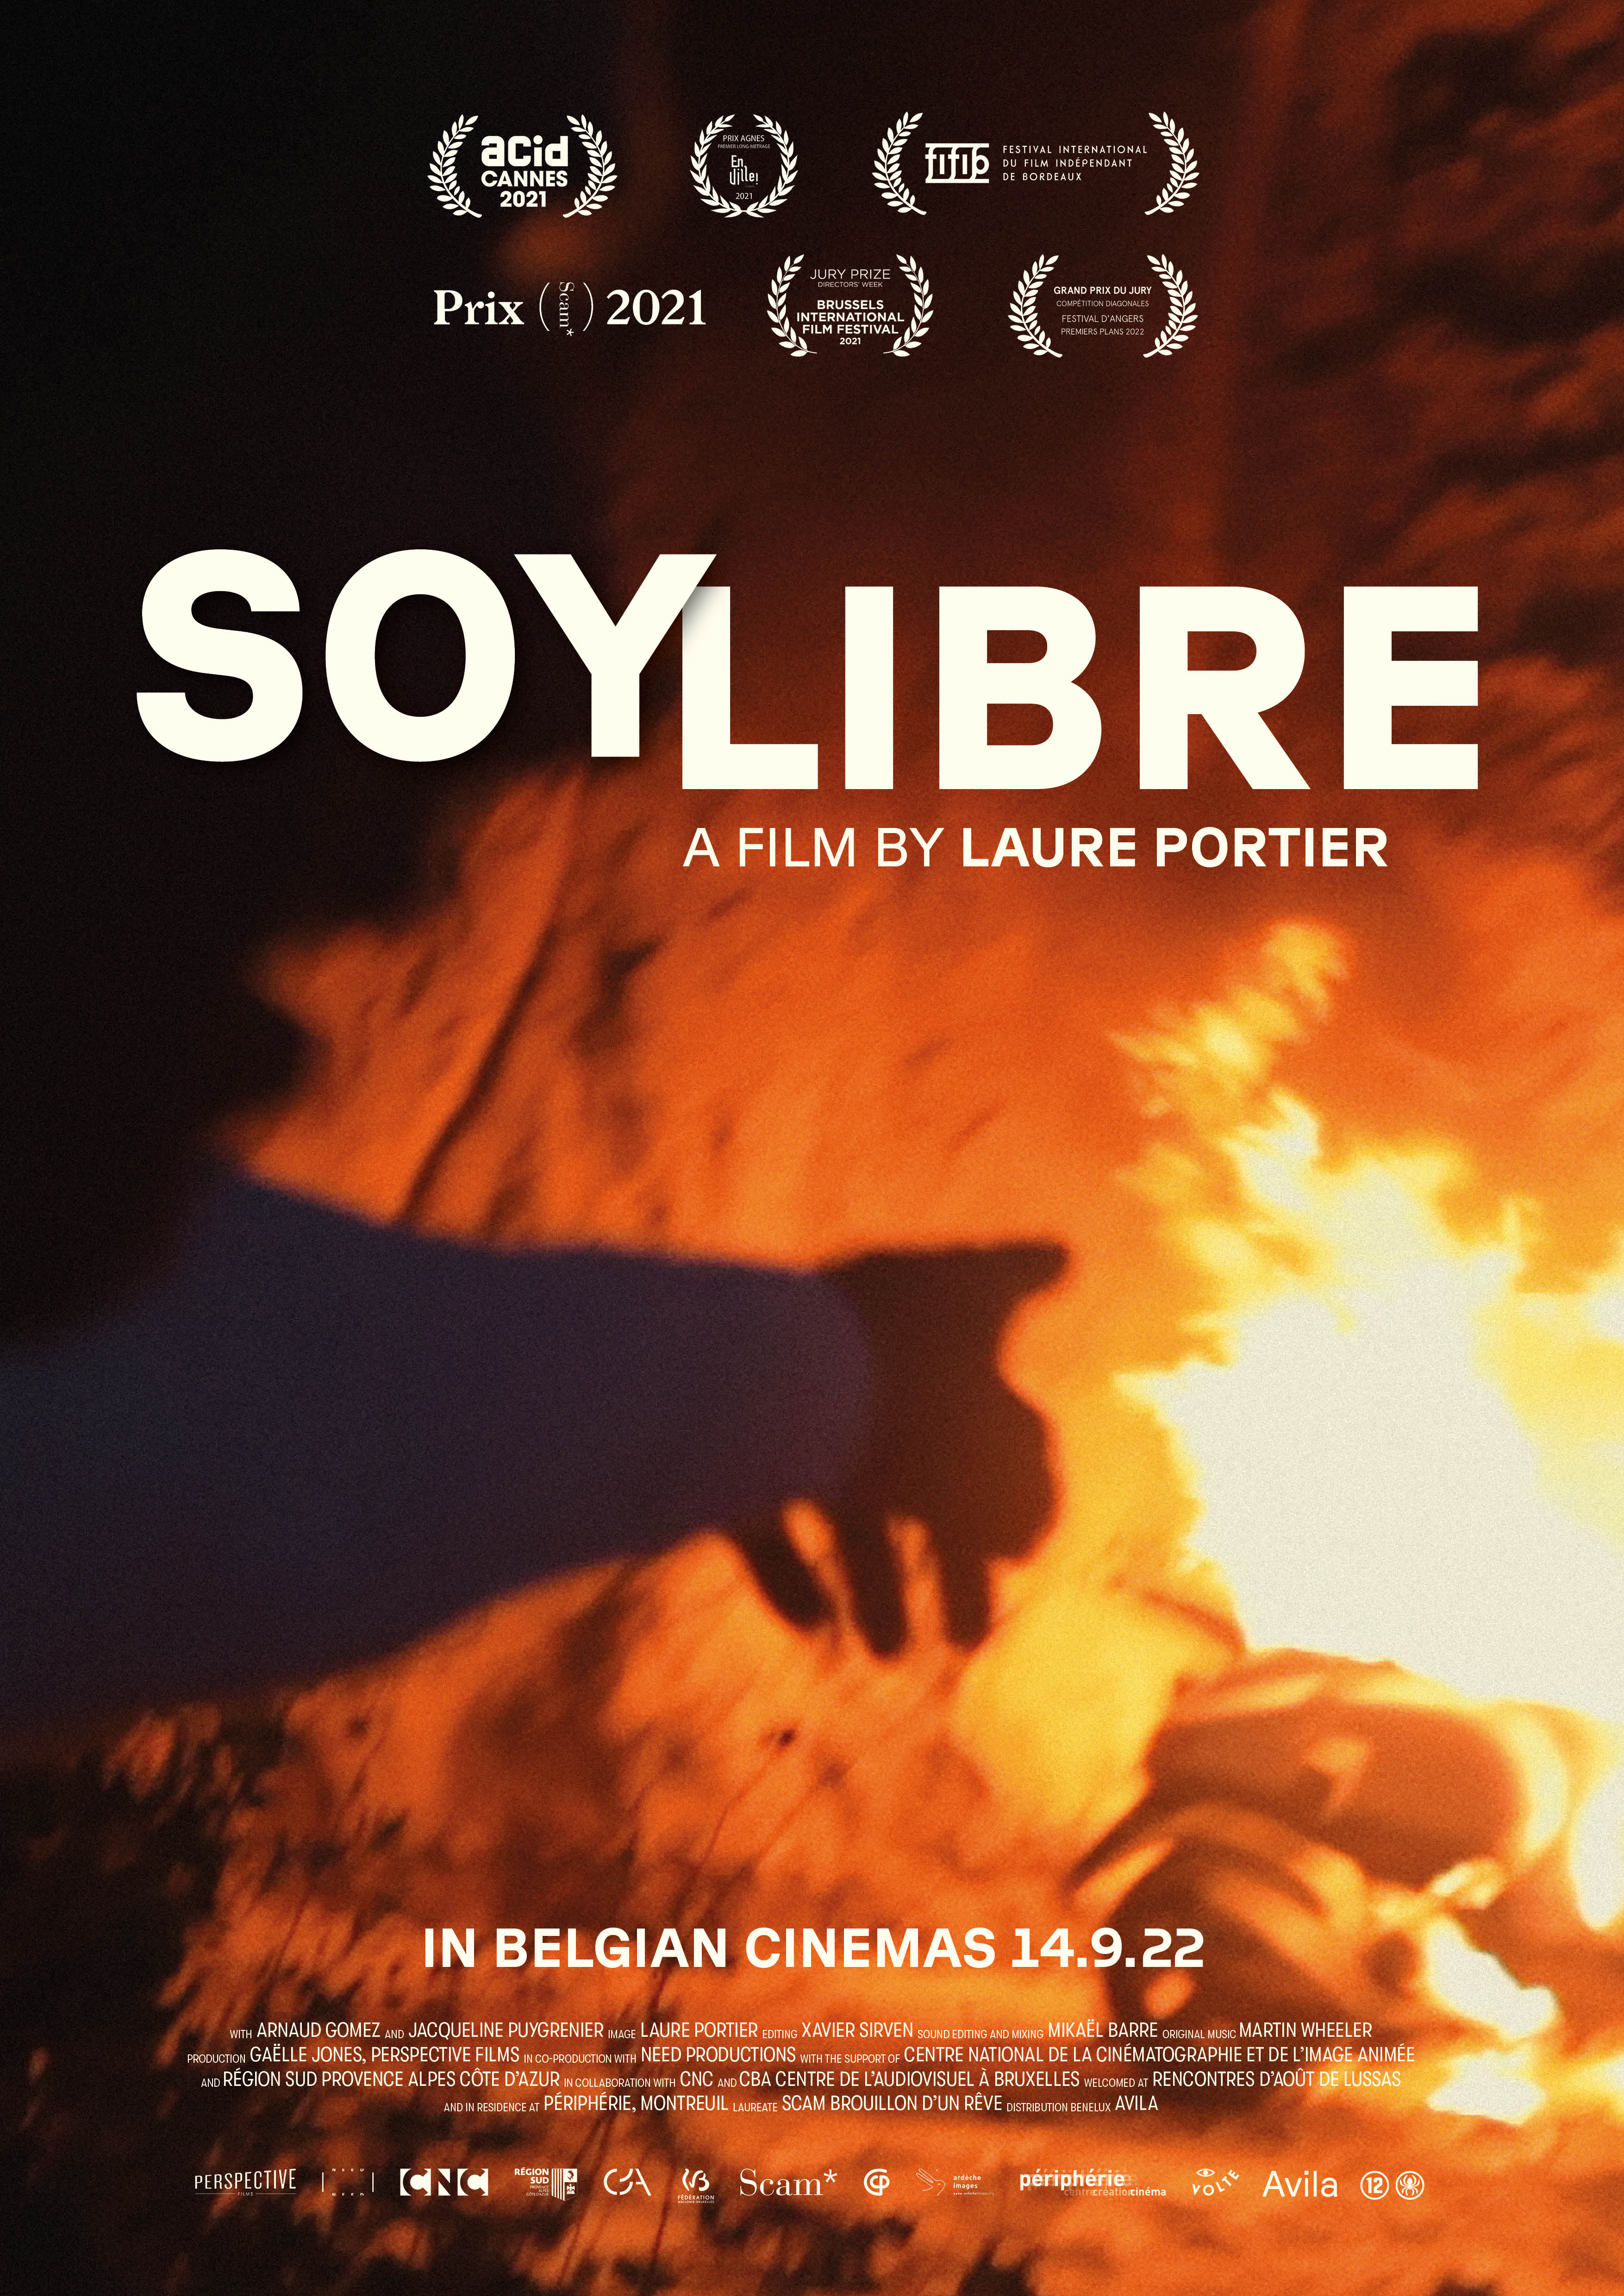 Soy Libre (Laure Portier, 2021)